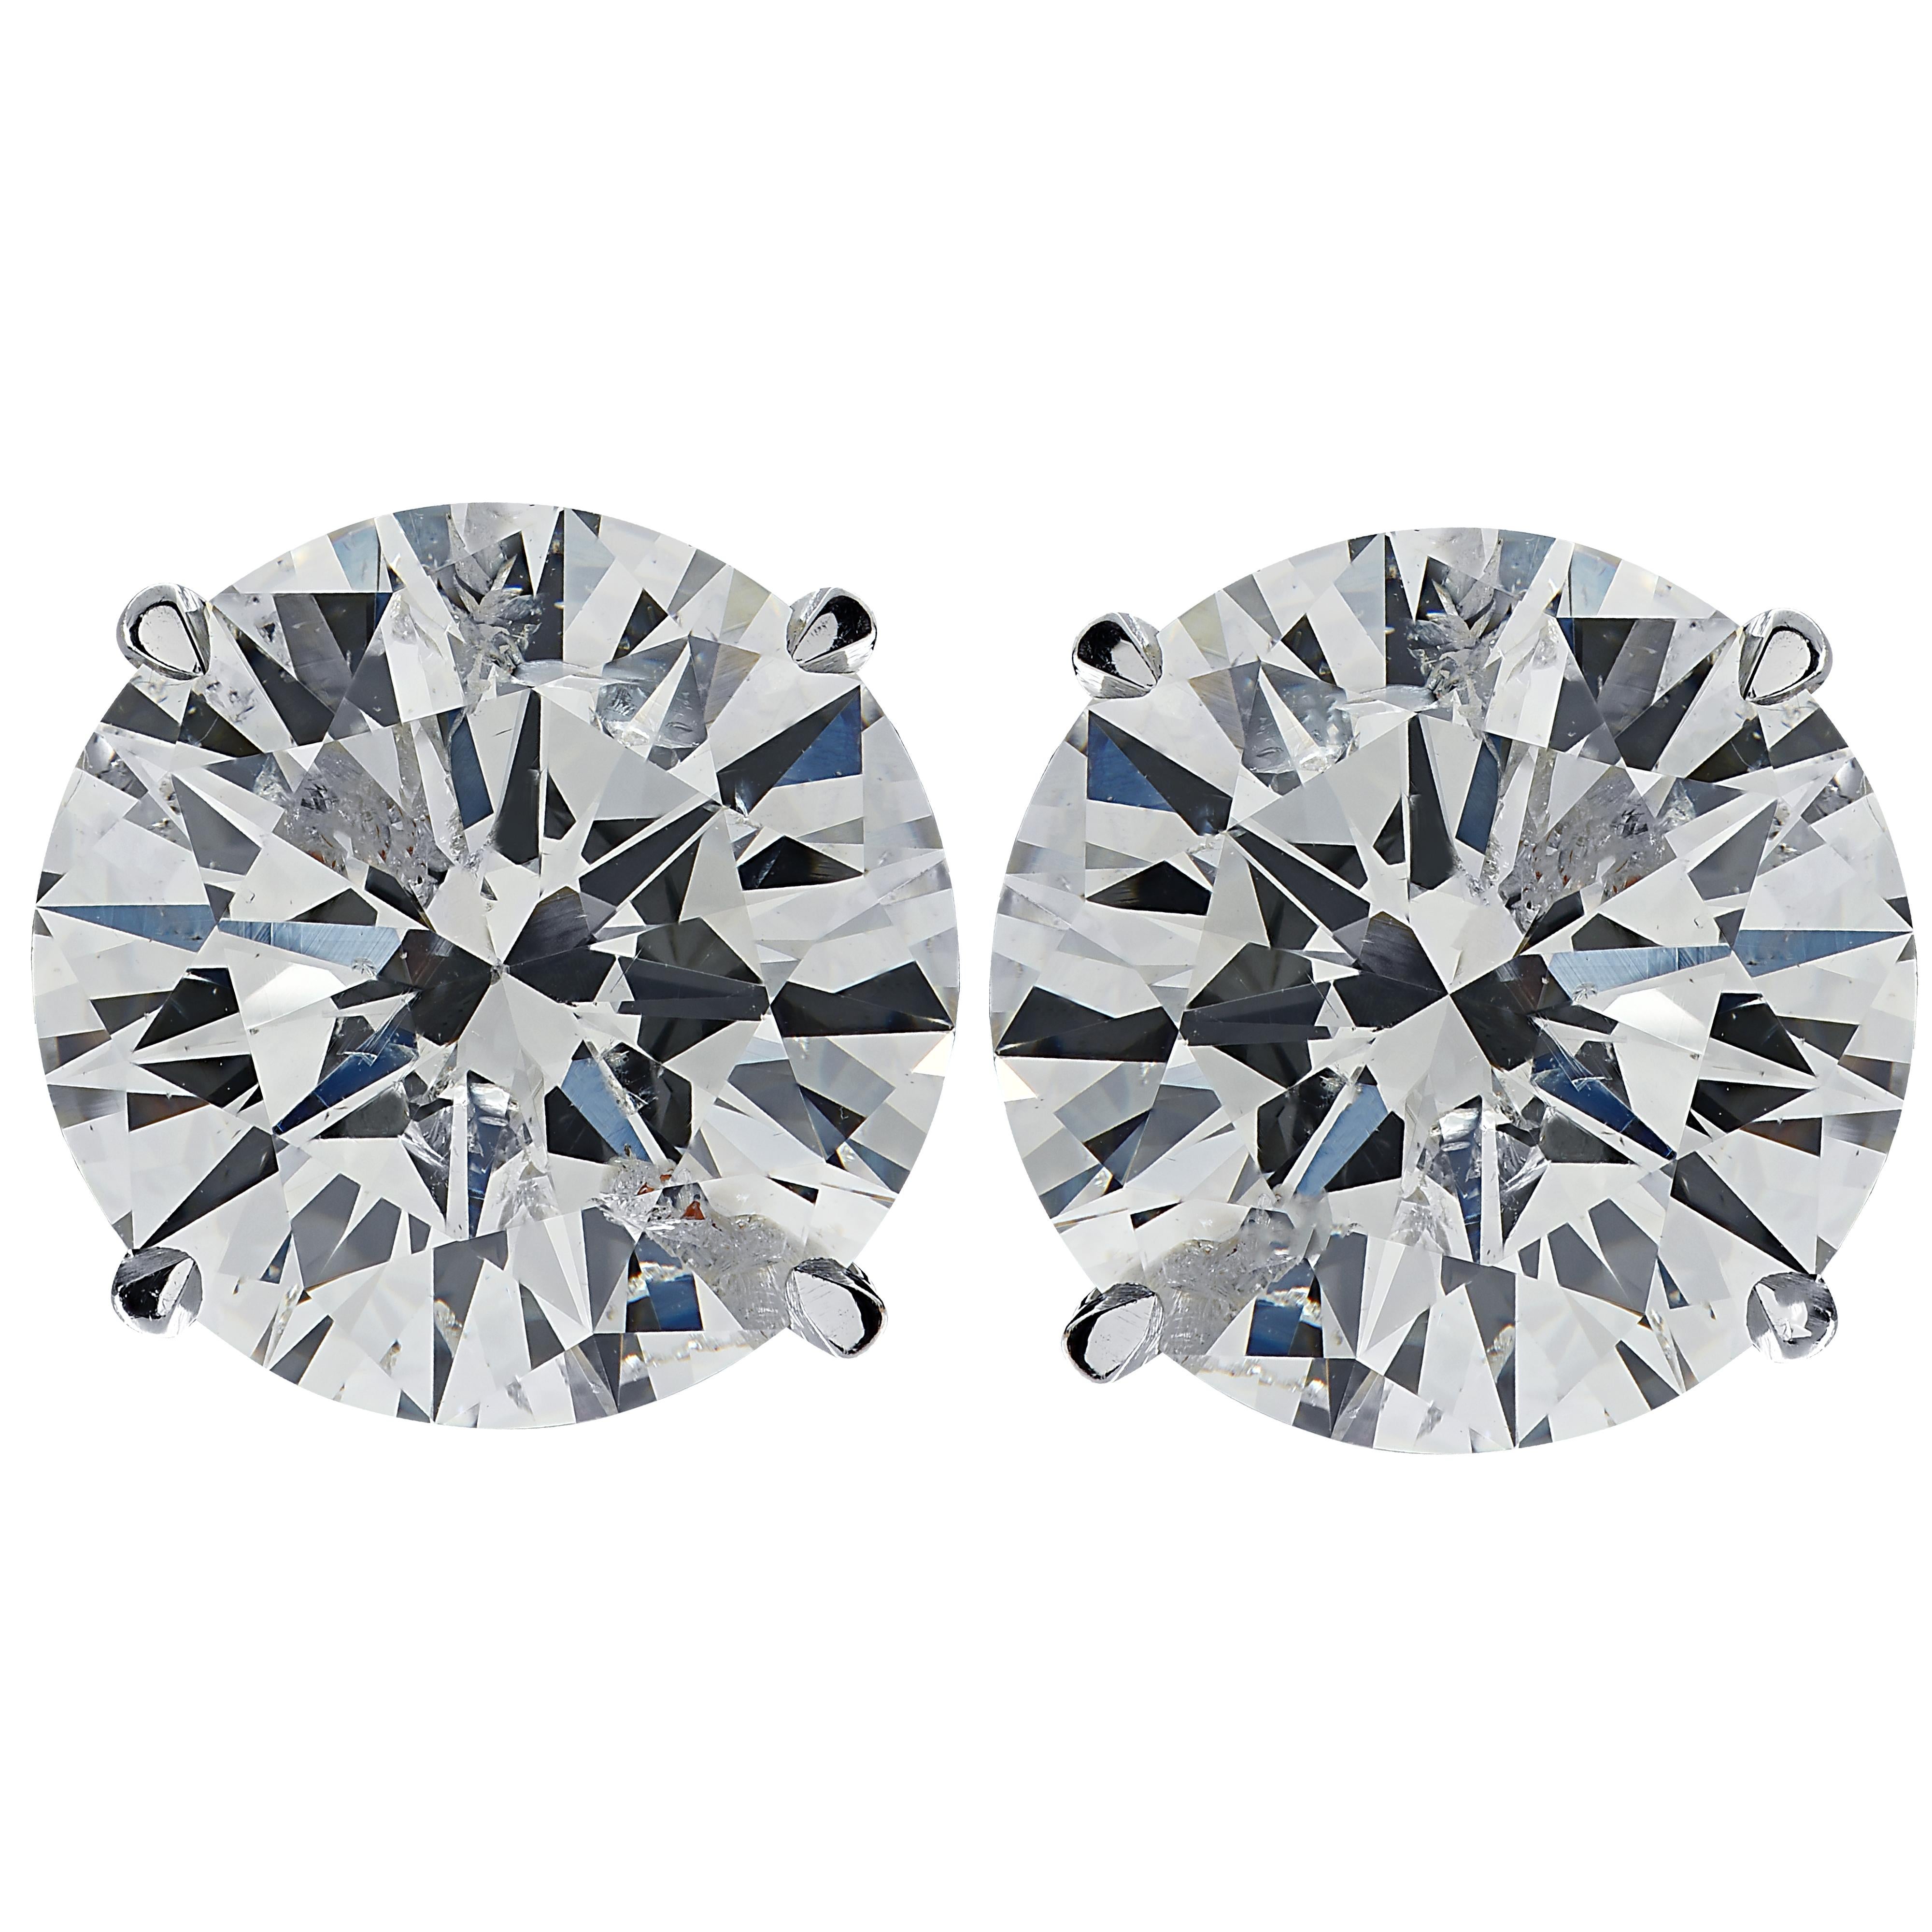 Superbes boucles d'oreilles solitaires Vivid Diamonds réalisées à la main en platine, mettant en valeur 2 spectaculaires diamants ronds de taille brillant certifiés GIA pesant 3.57 carats au total, couleur D-E, pureté SI2. Ces diamants ont été